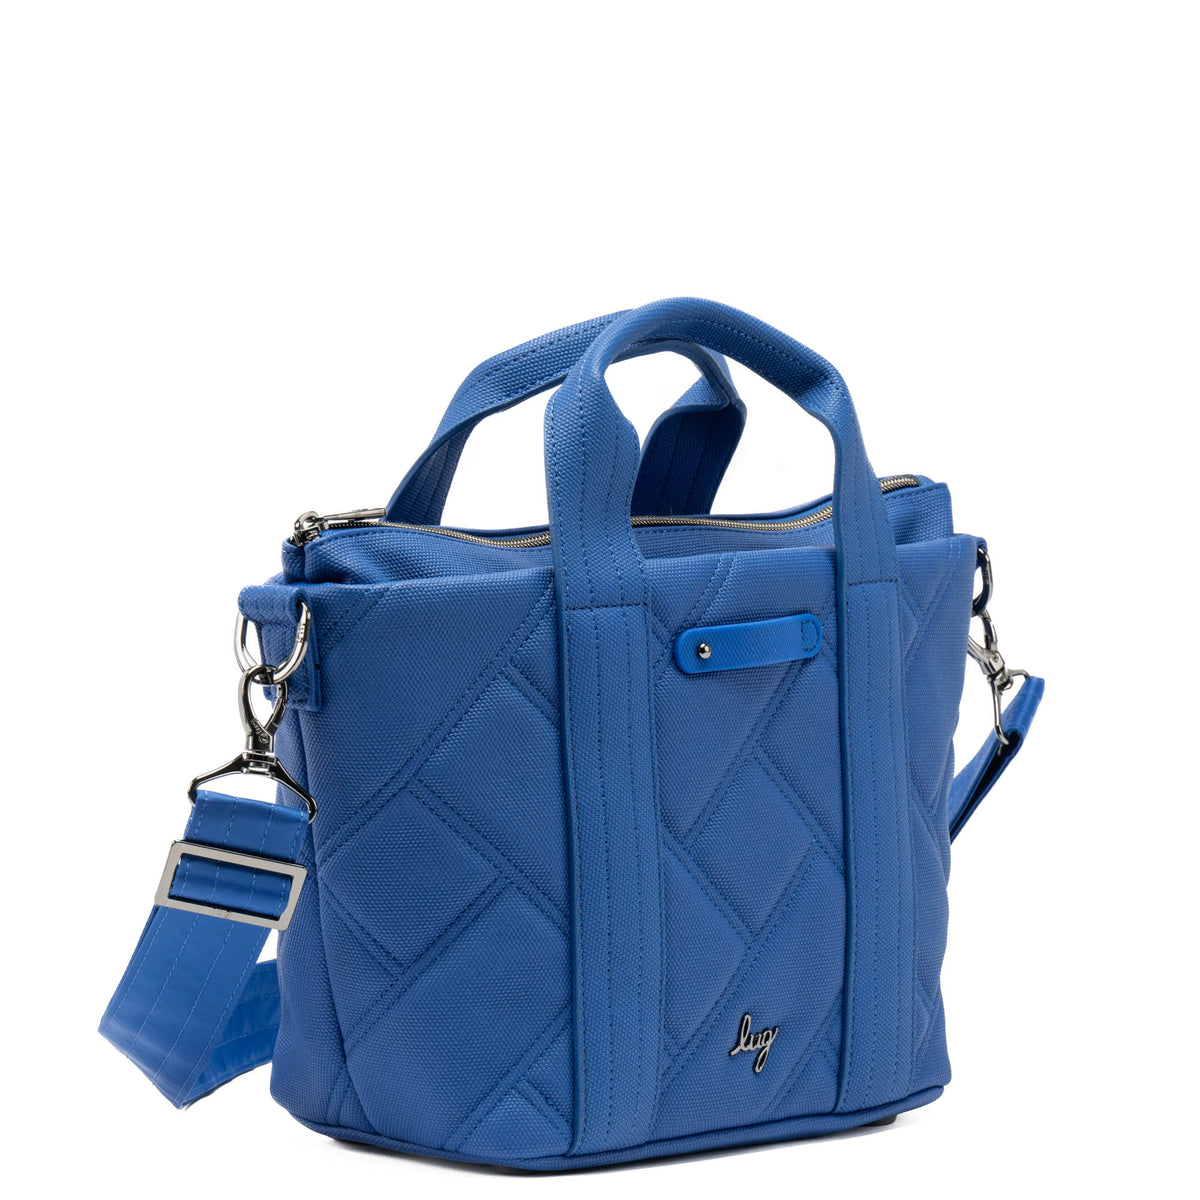 Dory Matte Luxe VL Crossbody Bag